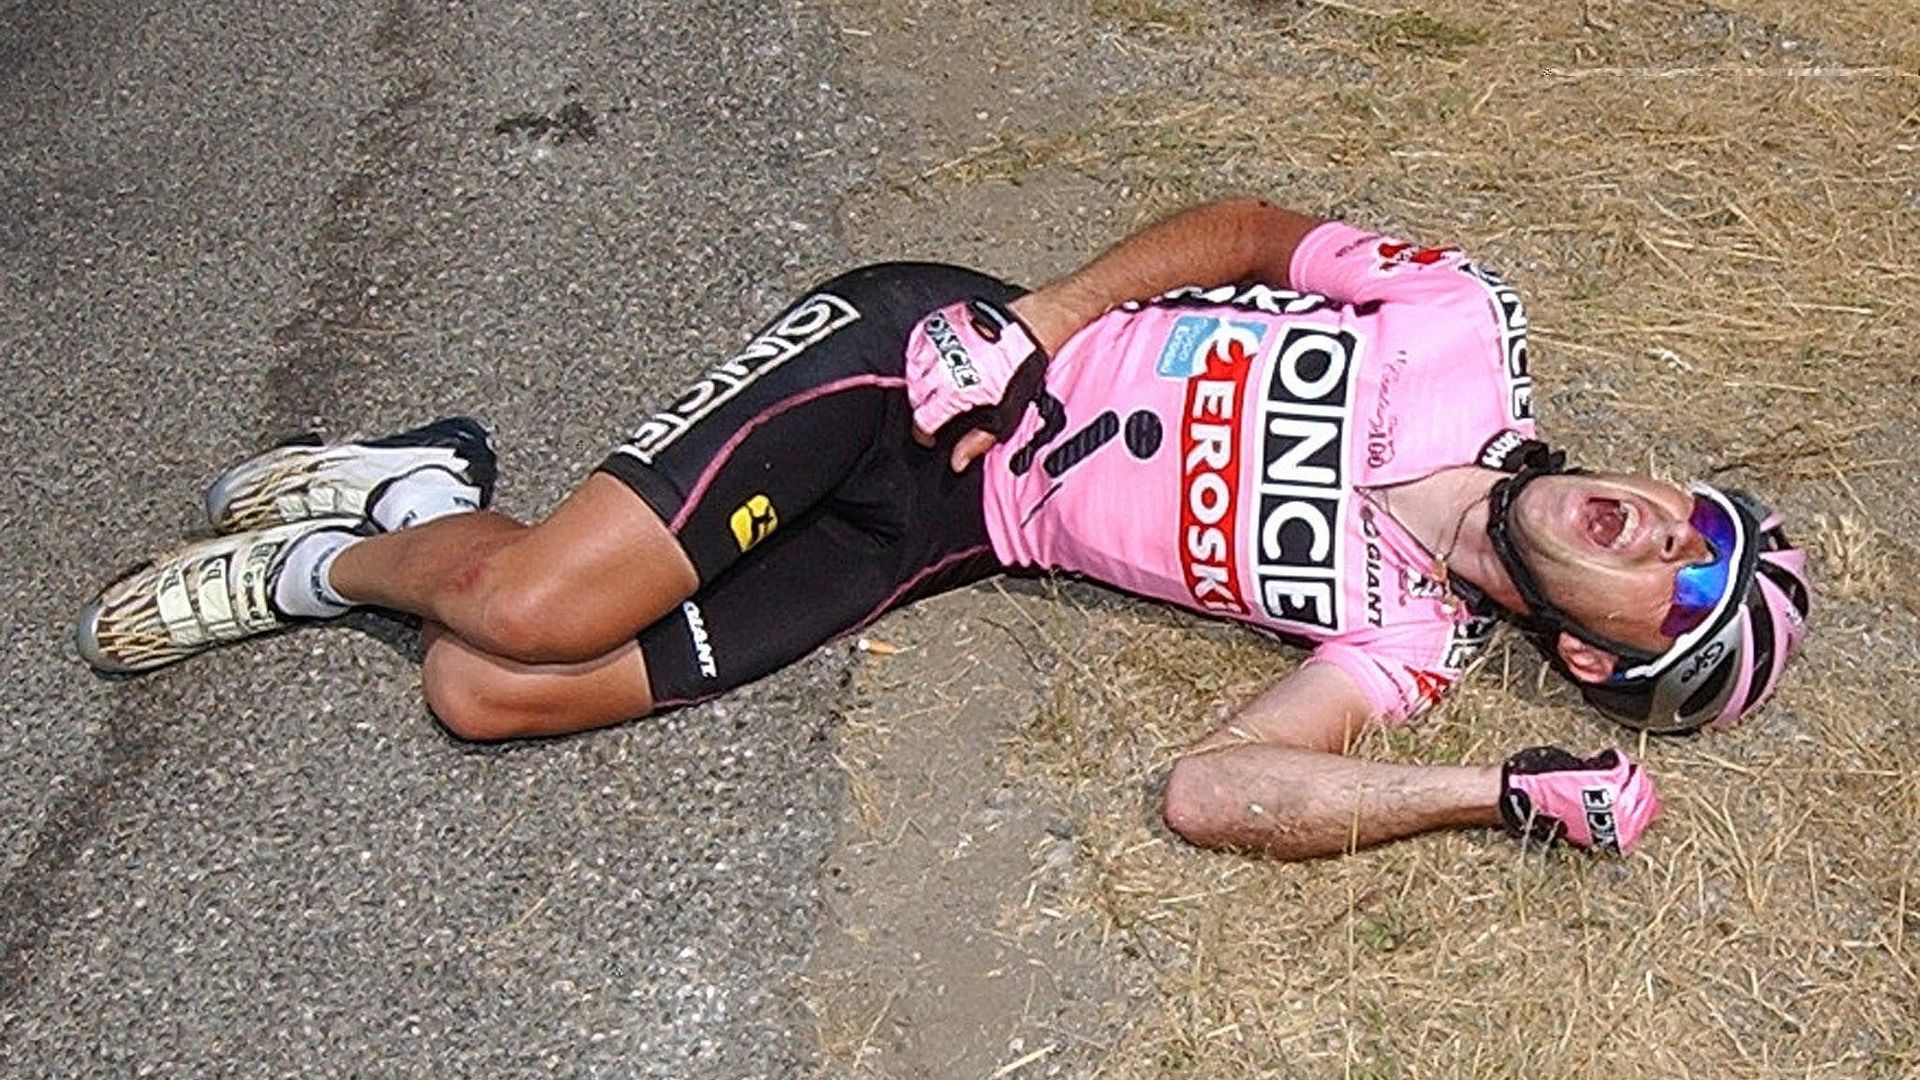 Tour de France 2003 : Le Bourg-d'Oisans > Gap. Armstrong attaqué. Beloki chute lourdement